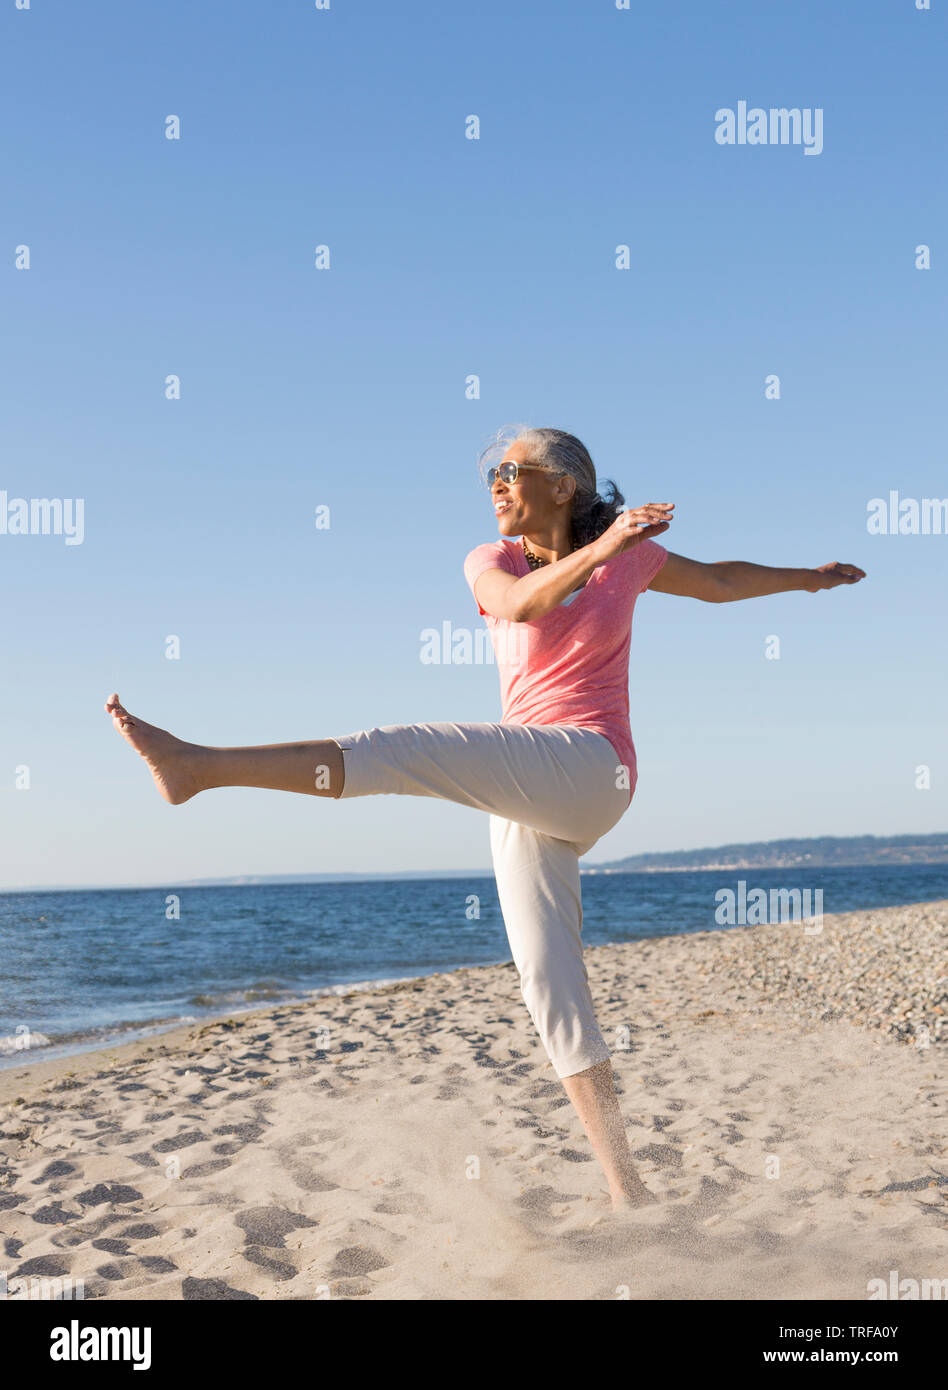 Glücklich, im mittleren Alter, schwarz, afrikanische amerikanische Frau mit Sonnenbrille, Spaß am Strand im Sommer. Aktive, gesunde, reife Lebensstile. Stockfoto